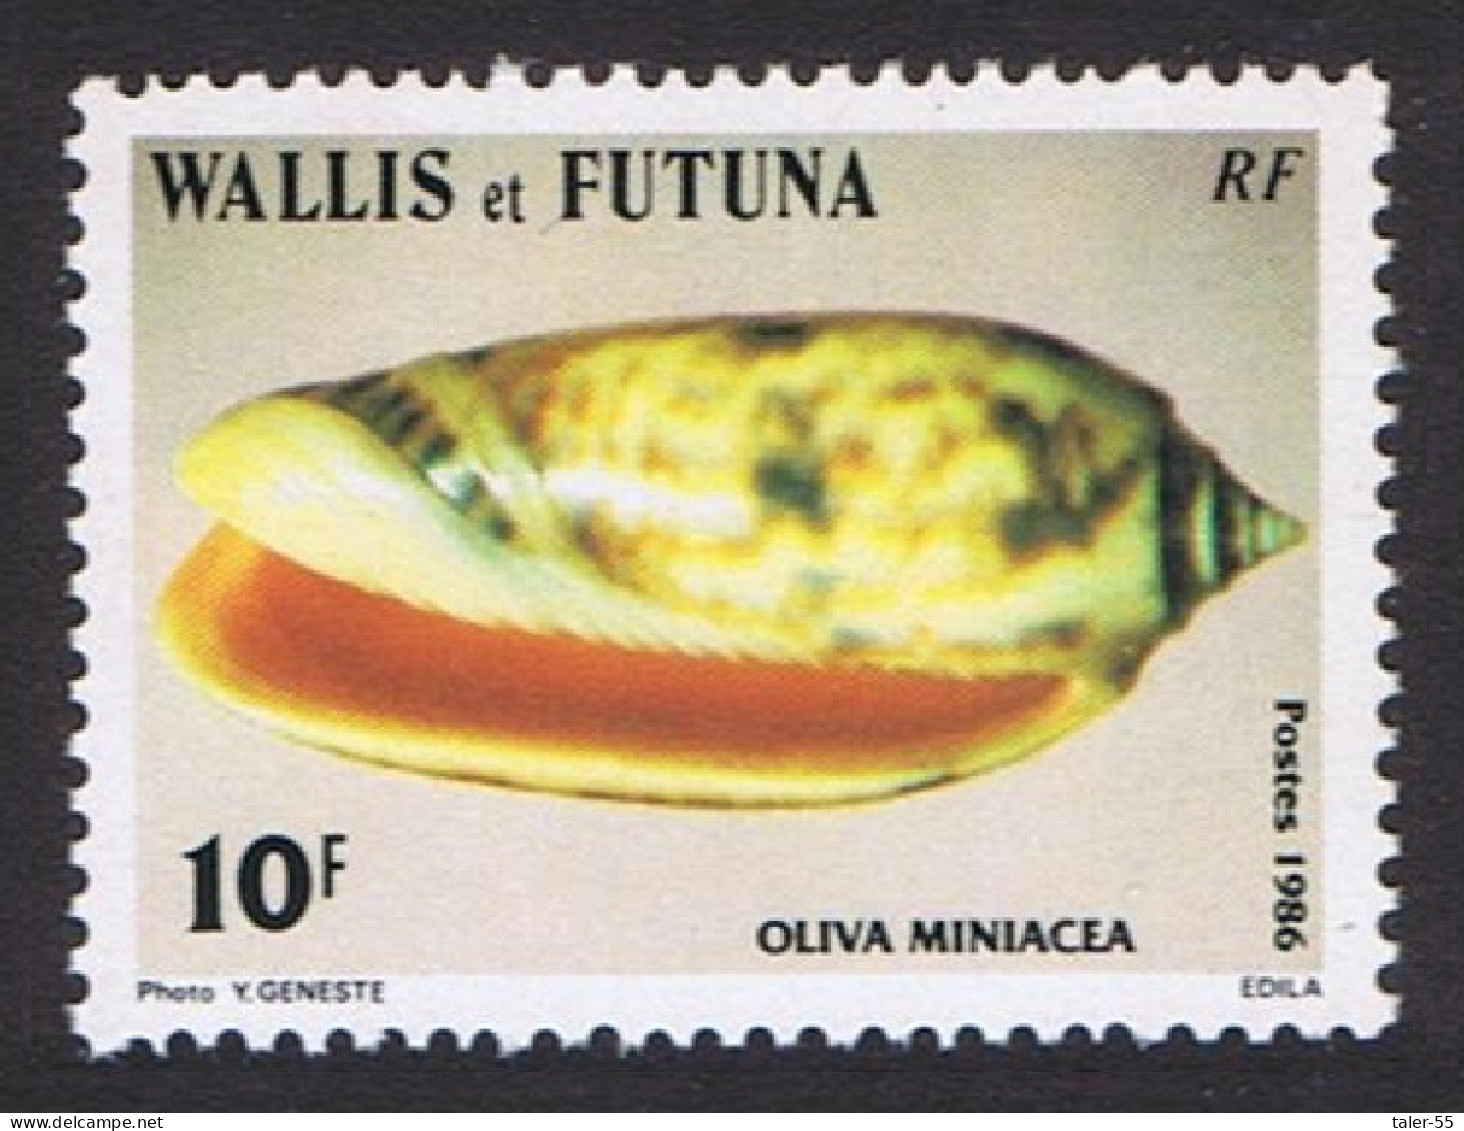 Wallis And Futuna Sea Shells 10f 'Oliva Miniacea' 1986 MNH SG#483 Sc#335 - Nuevos